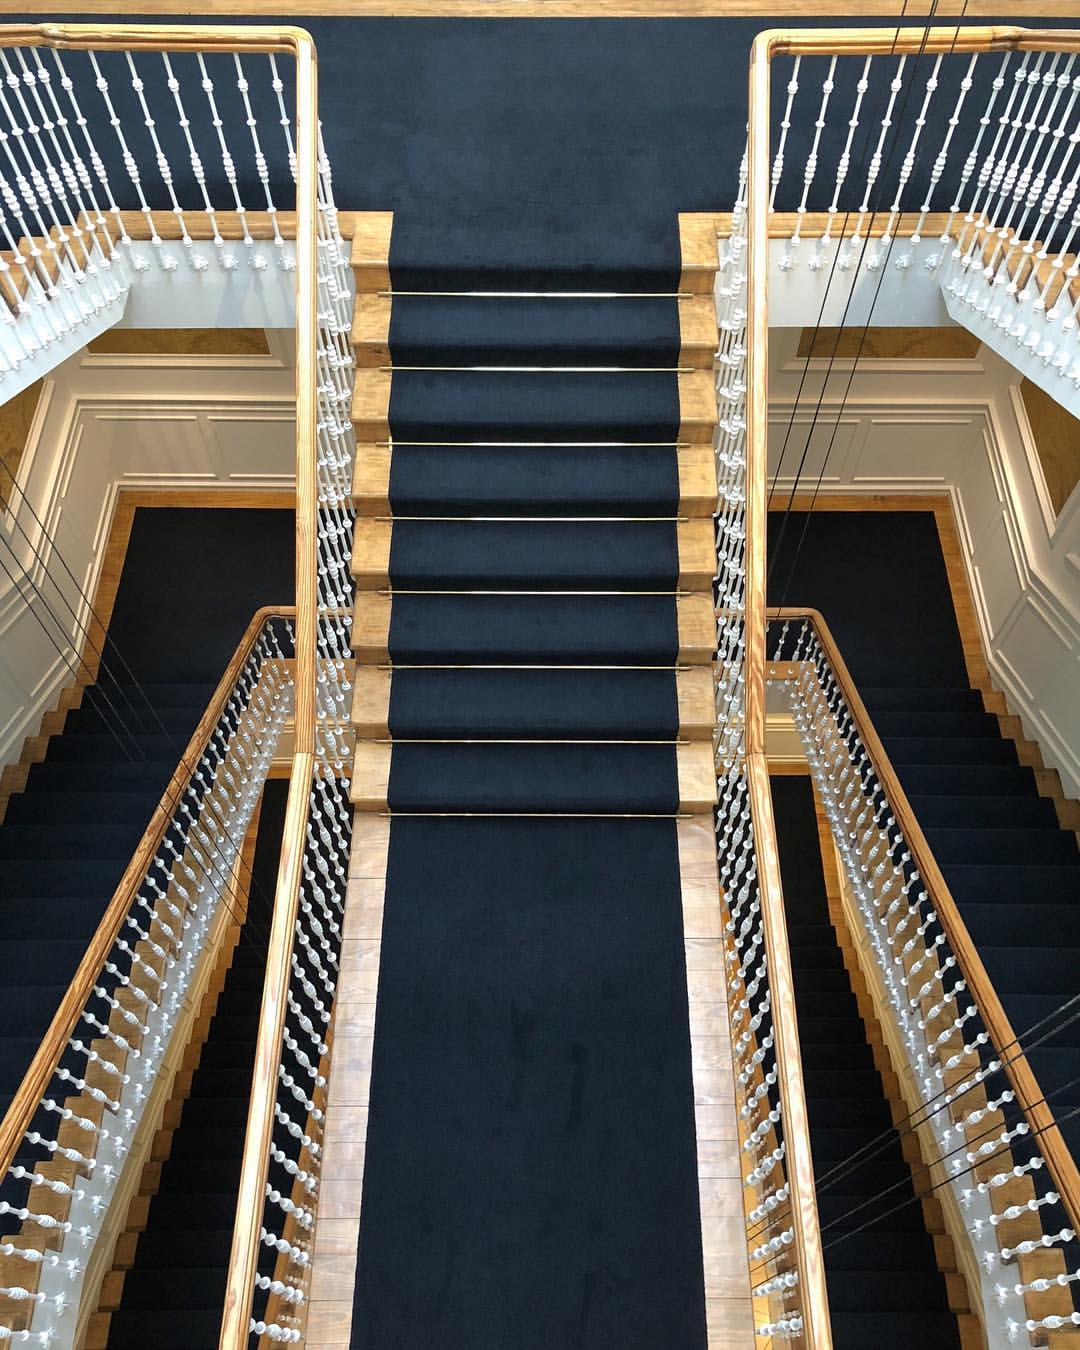 Dreamiest stairway.